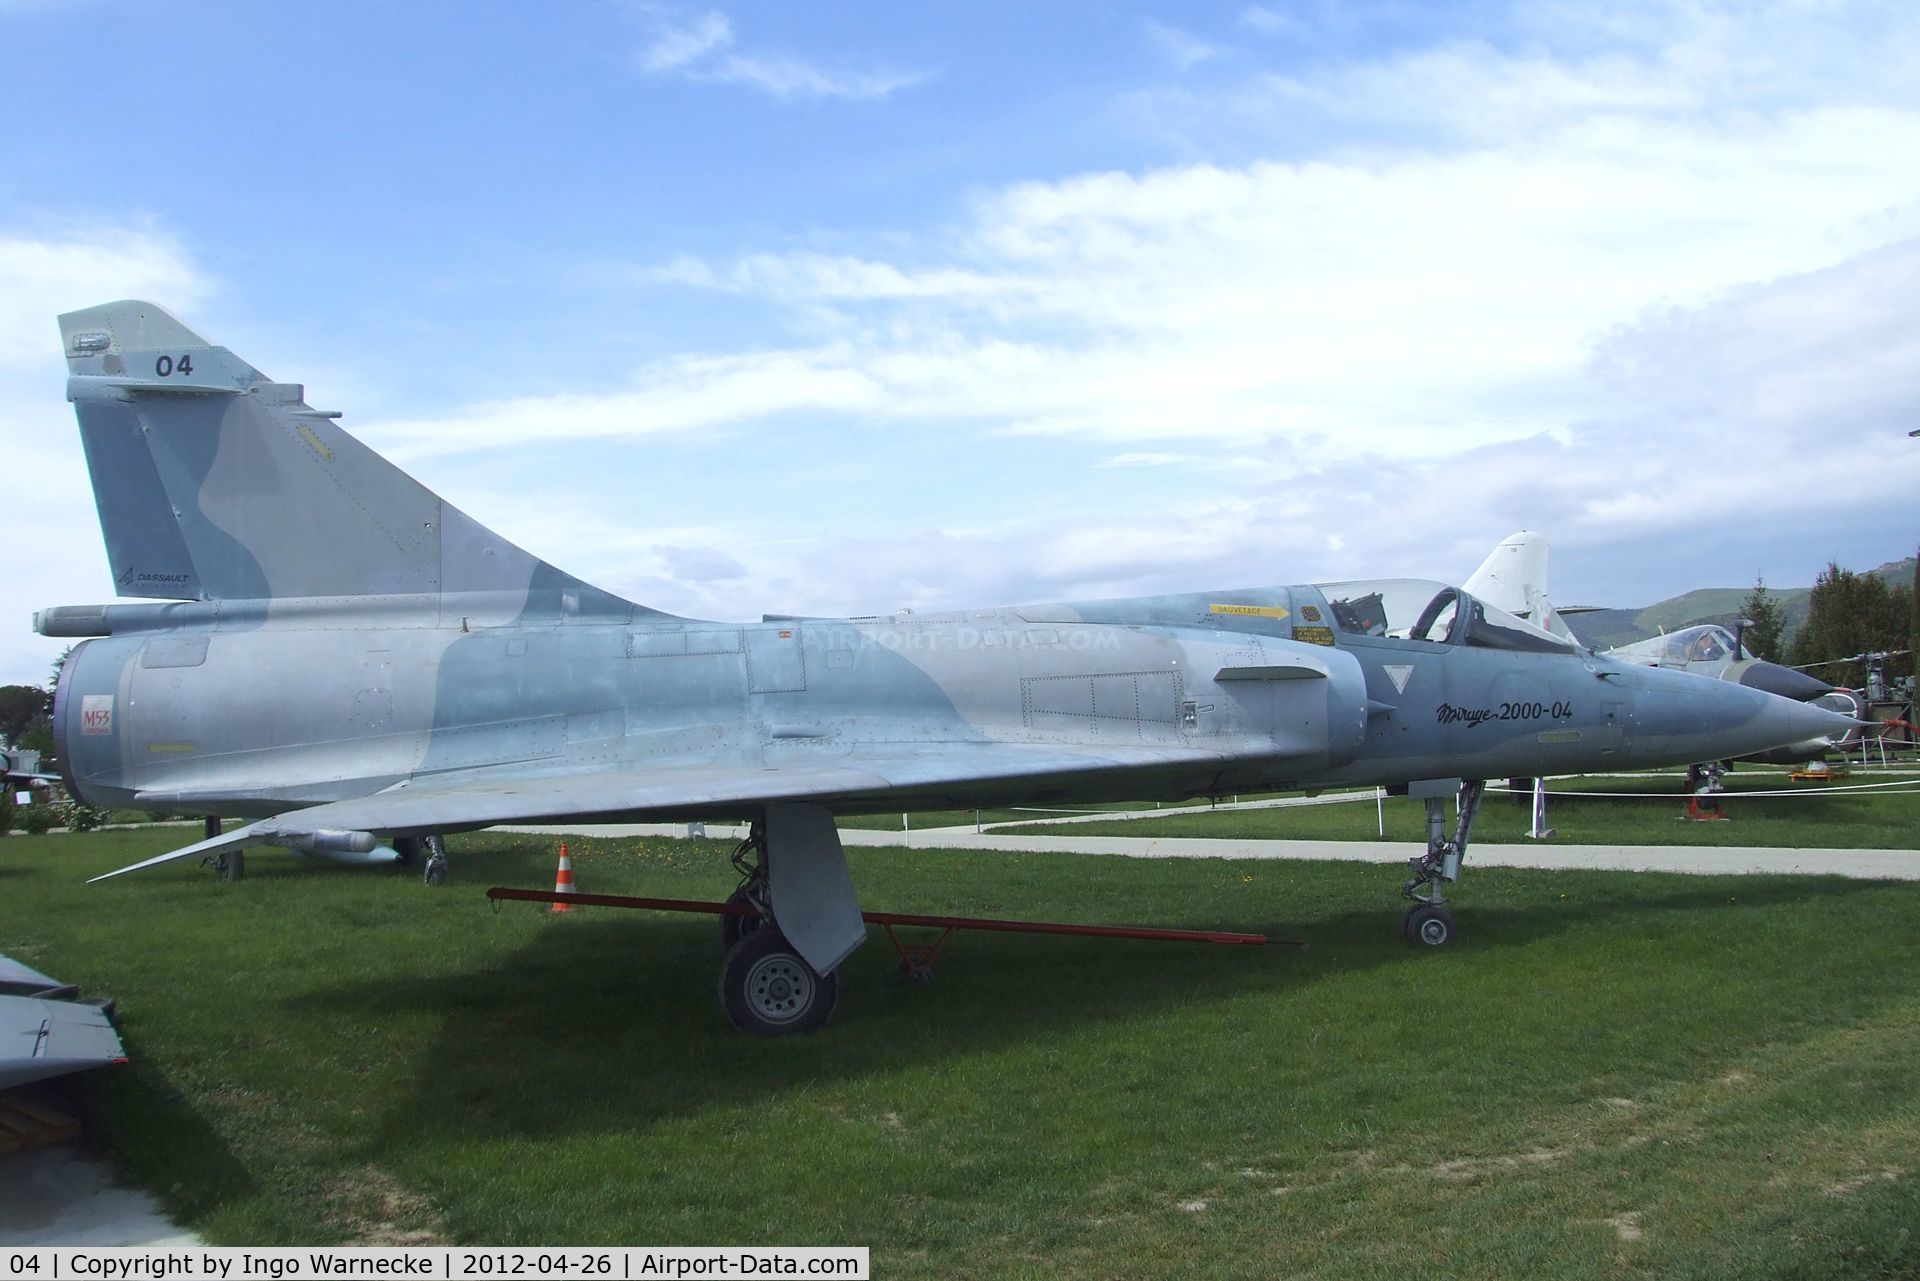 04, Dassault Mirage 2000 C/N 04, Dassault Mirage 2000 at the Musée Européen de l'Aviation de Chasse, Montelimar Ancone airfield